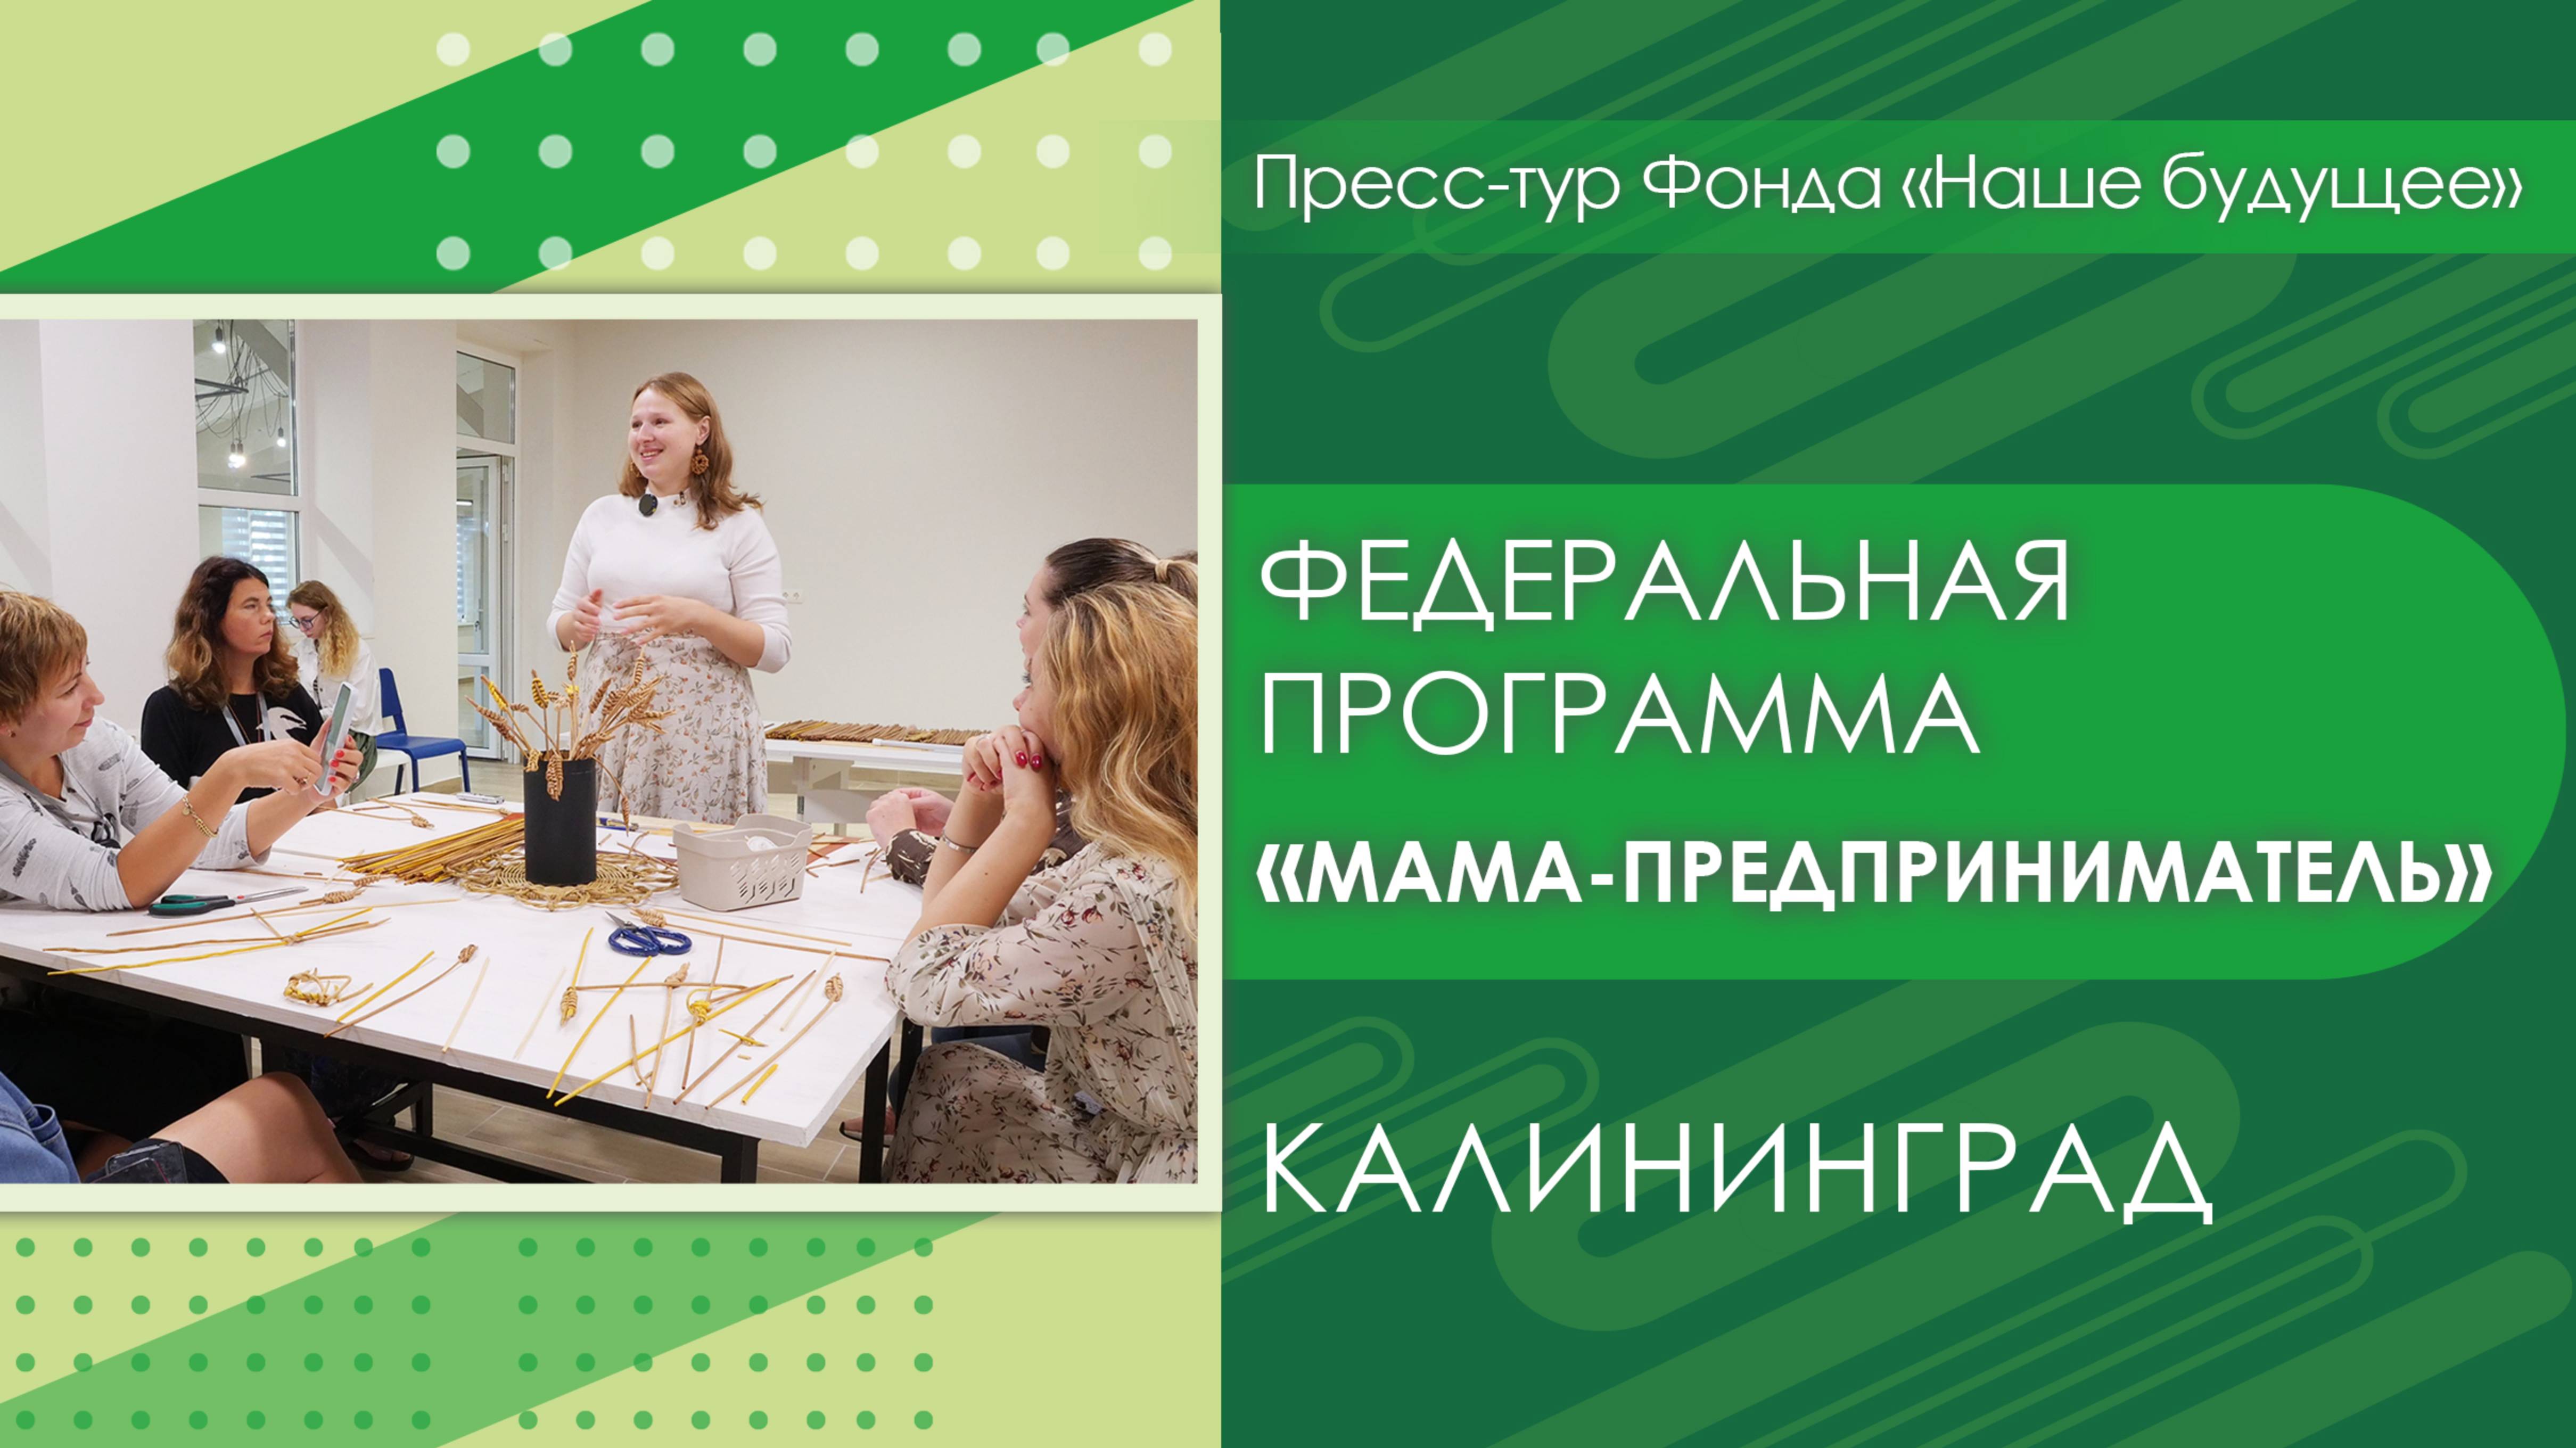 Федеральная программа «Мама-предприниматель» | Пресс-тур Калининград